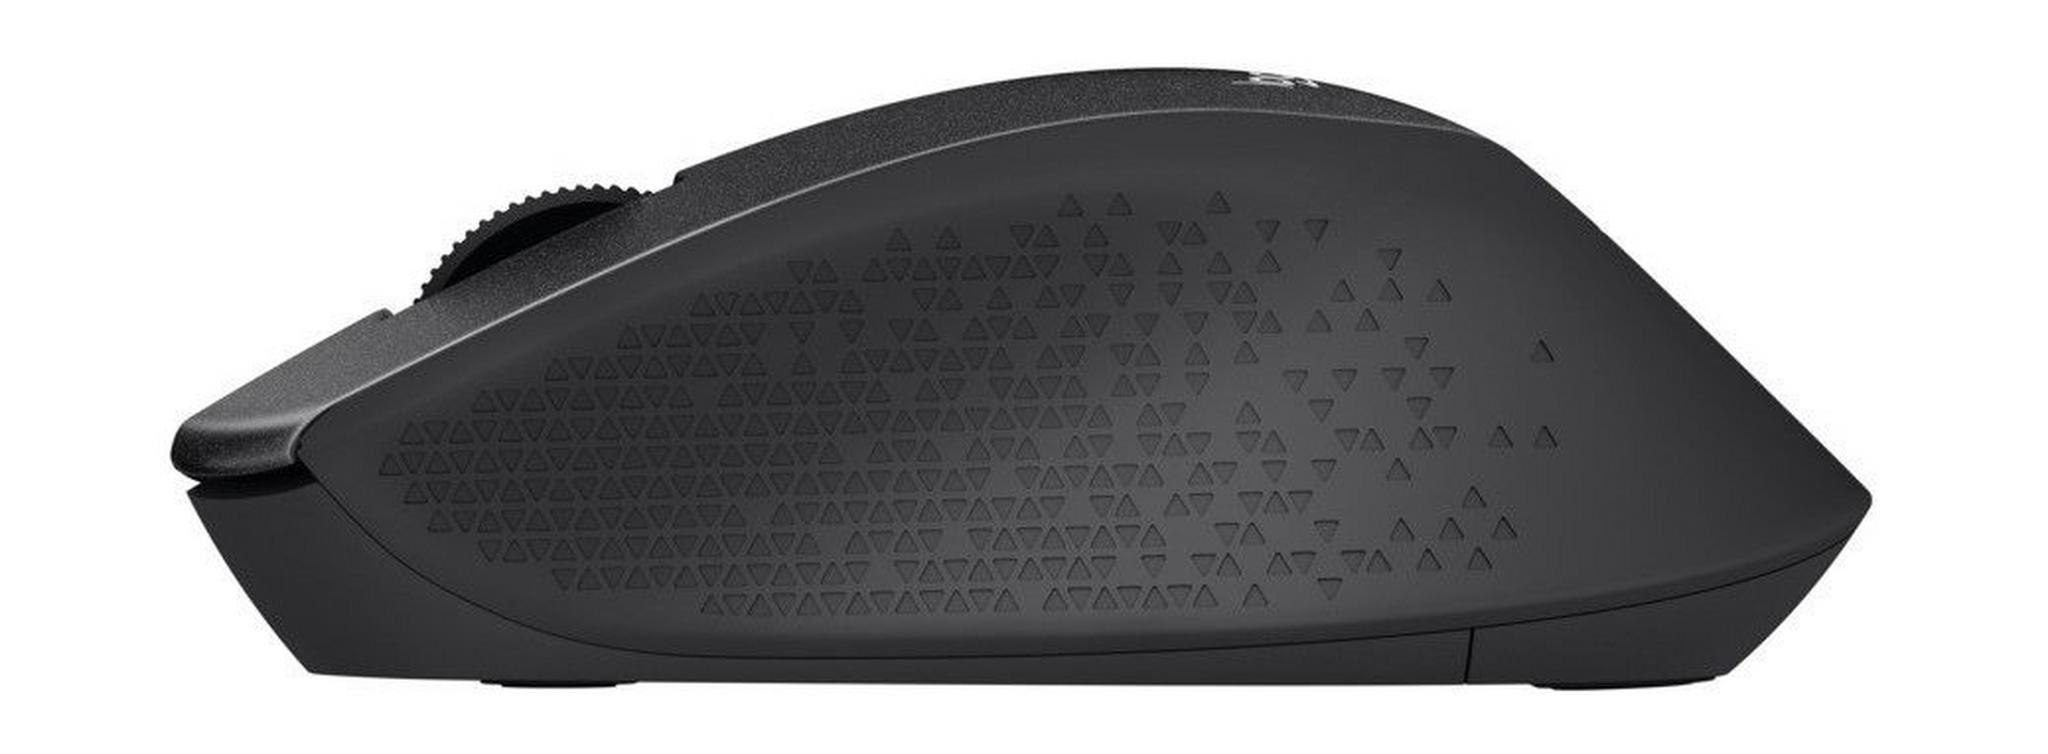 Logitech M330 Silent Plus Wireless Mouse (910-004909) - Black